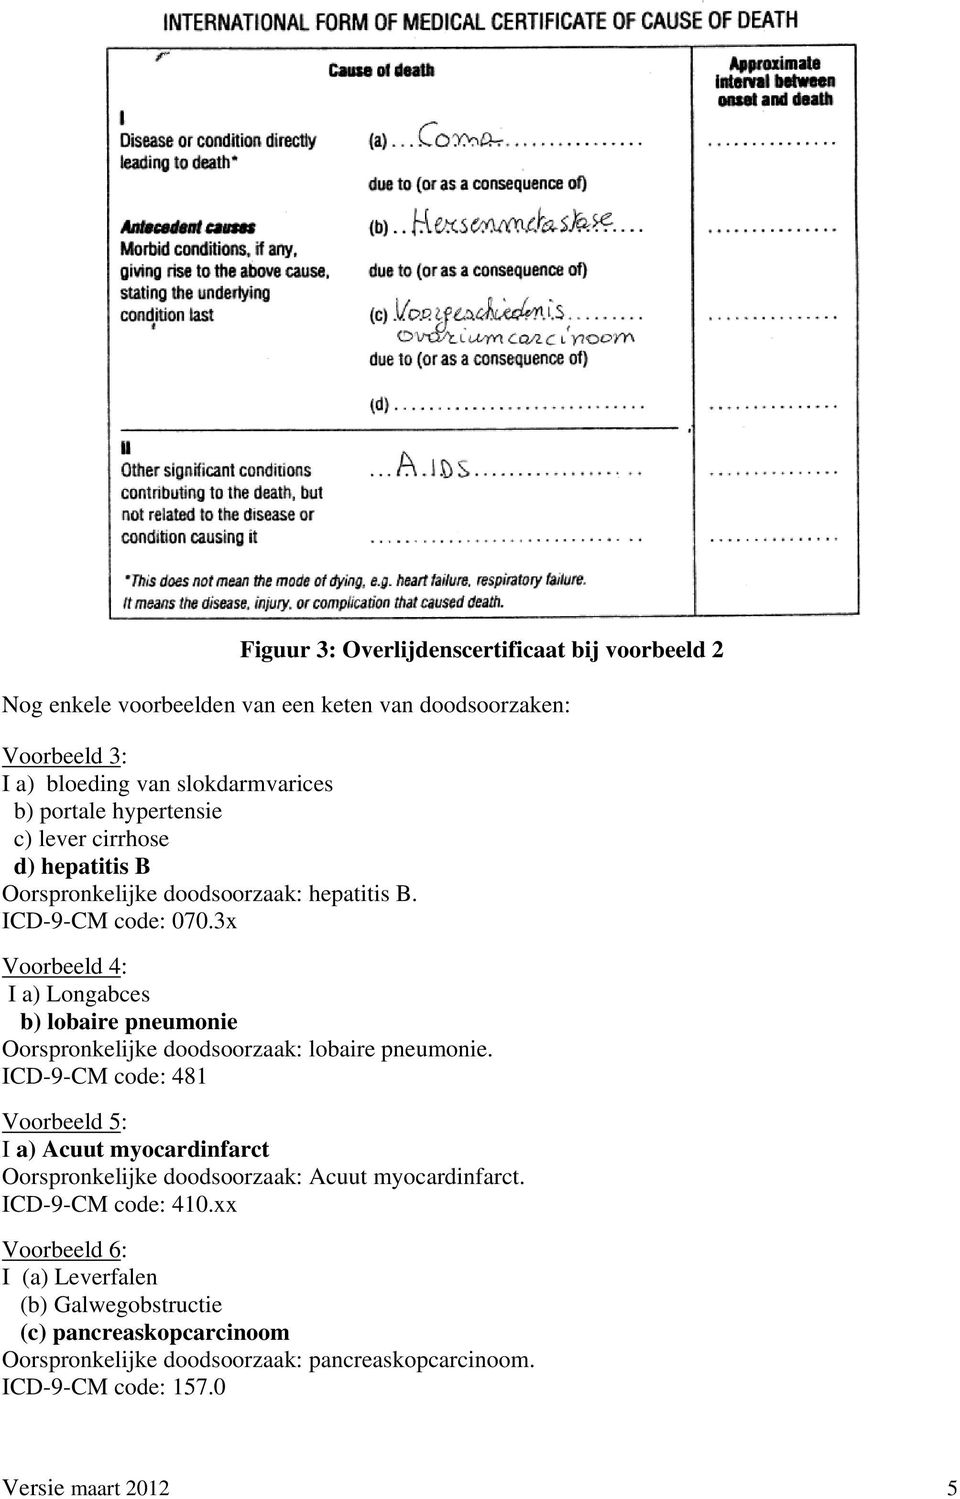 3x Voorbeeld 4: I a) Longabces b) lobaire pneumonie Oorspronkelijke doodsoorzaak: lobaire pneumonie.